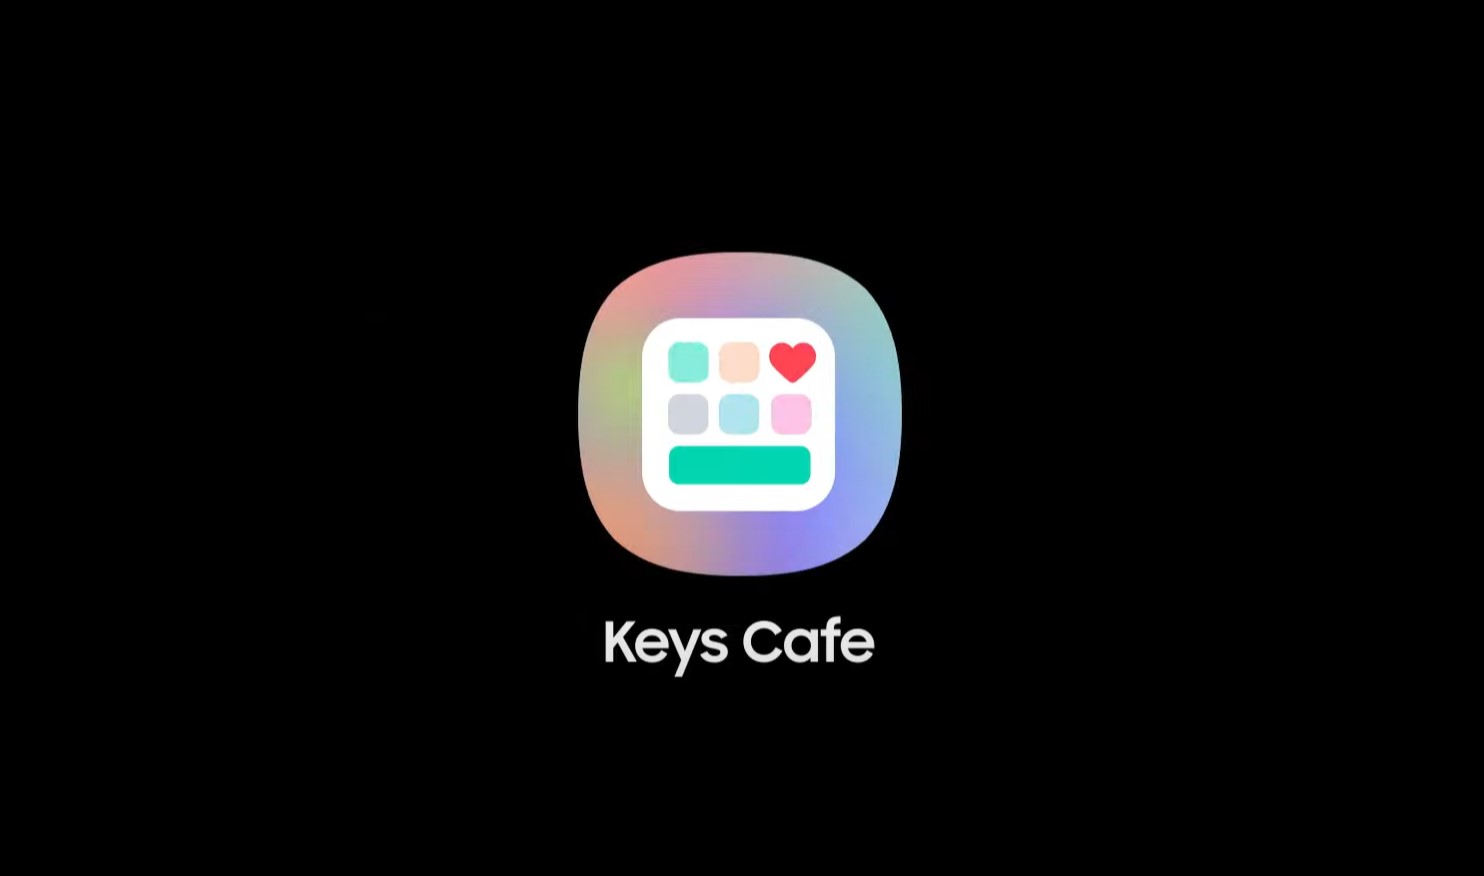 Keys Cafe APK download